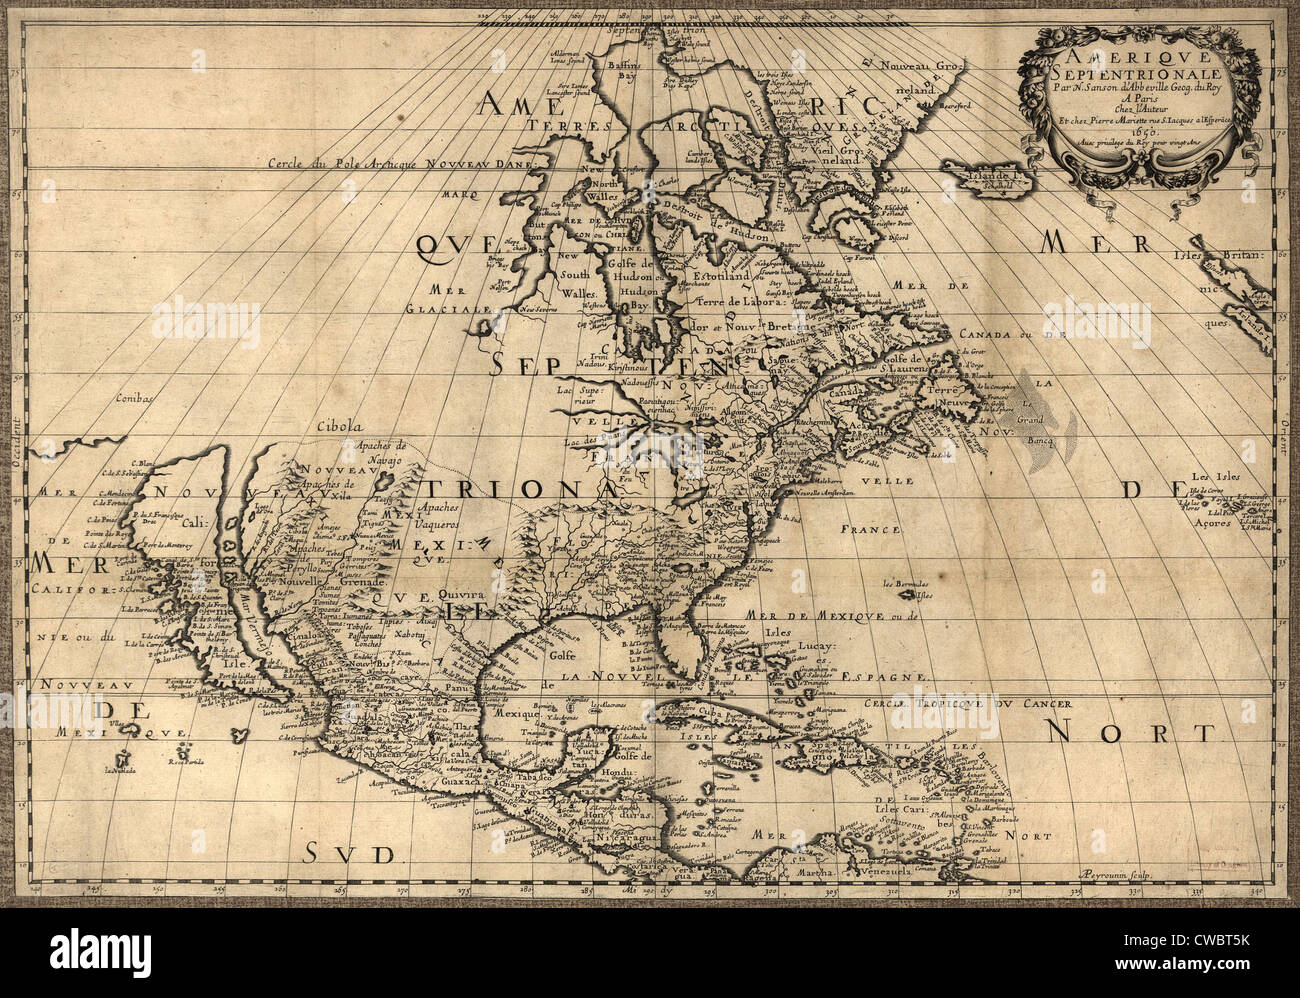 Mappa del Nord America continente mostrando misura di esplorazione nel 1650. La California è mostrato come un isola del Pacifico Foto Stock